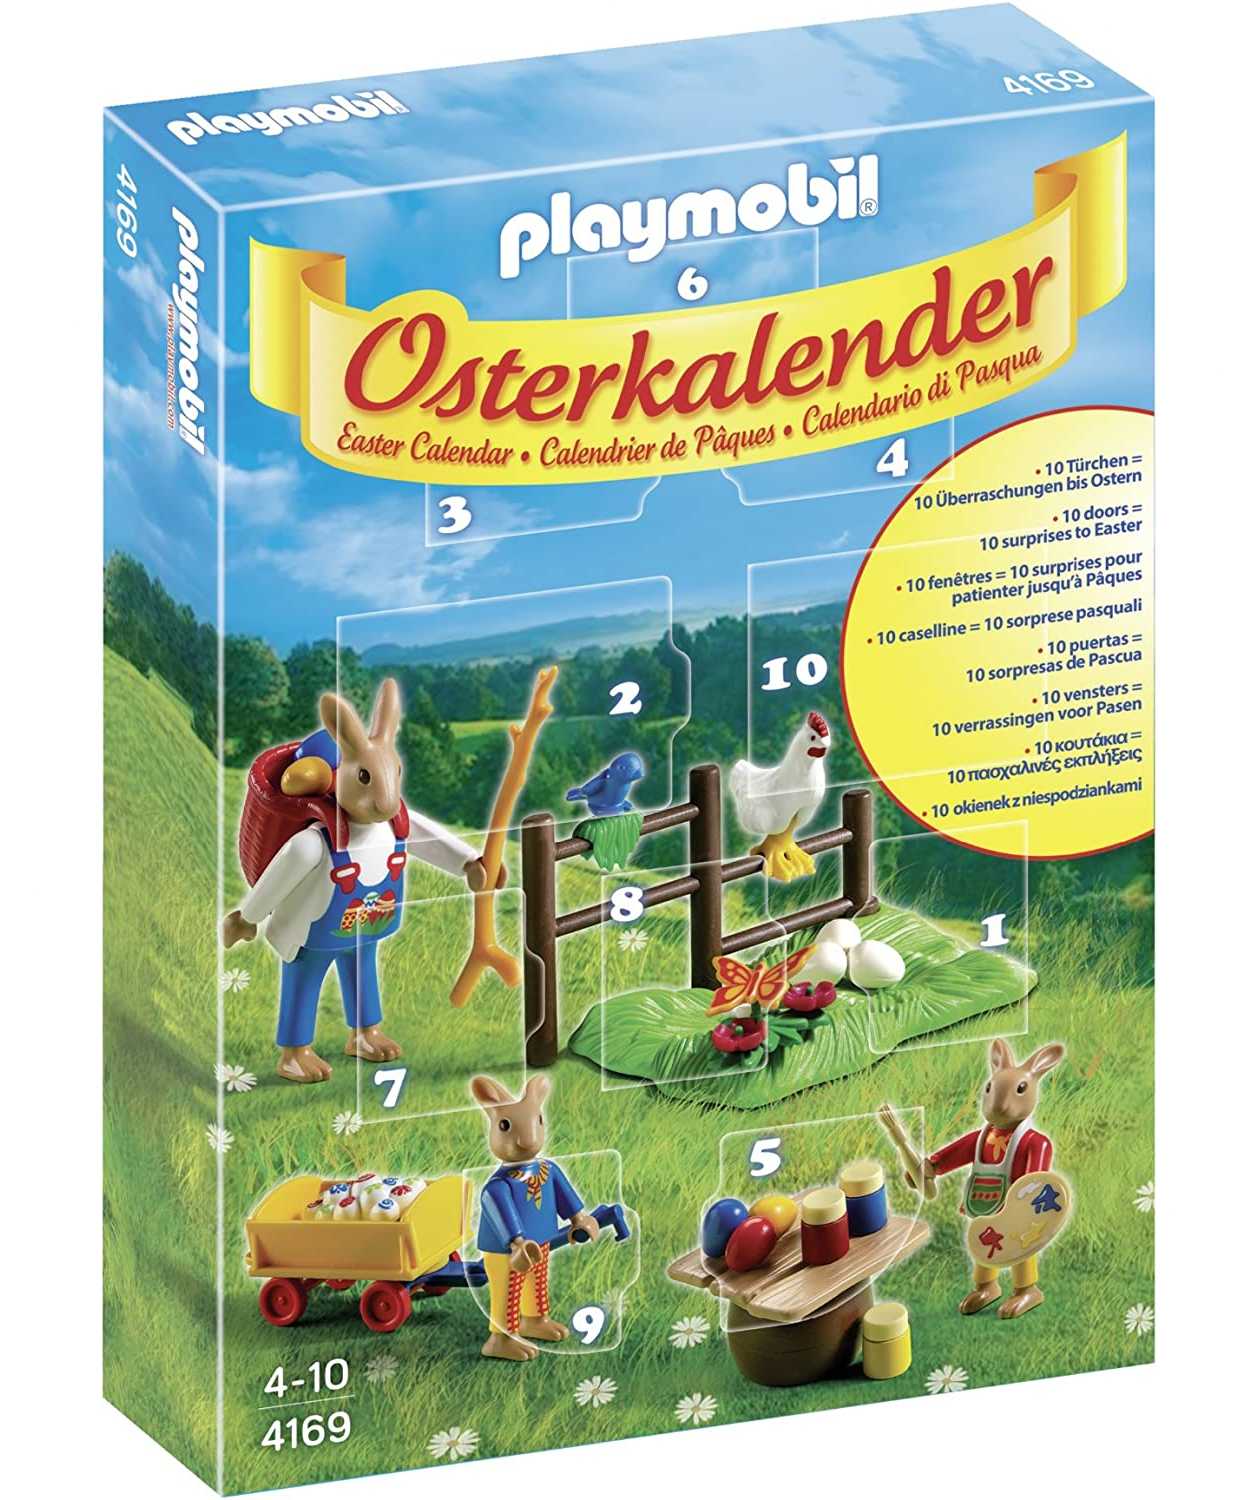 Calendario Playmobil para Pascua